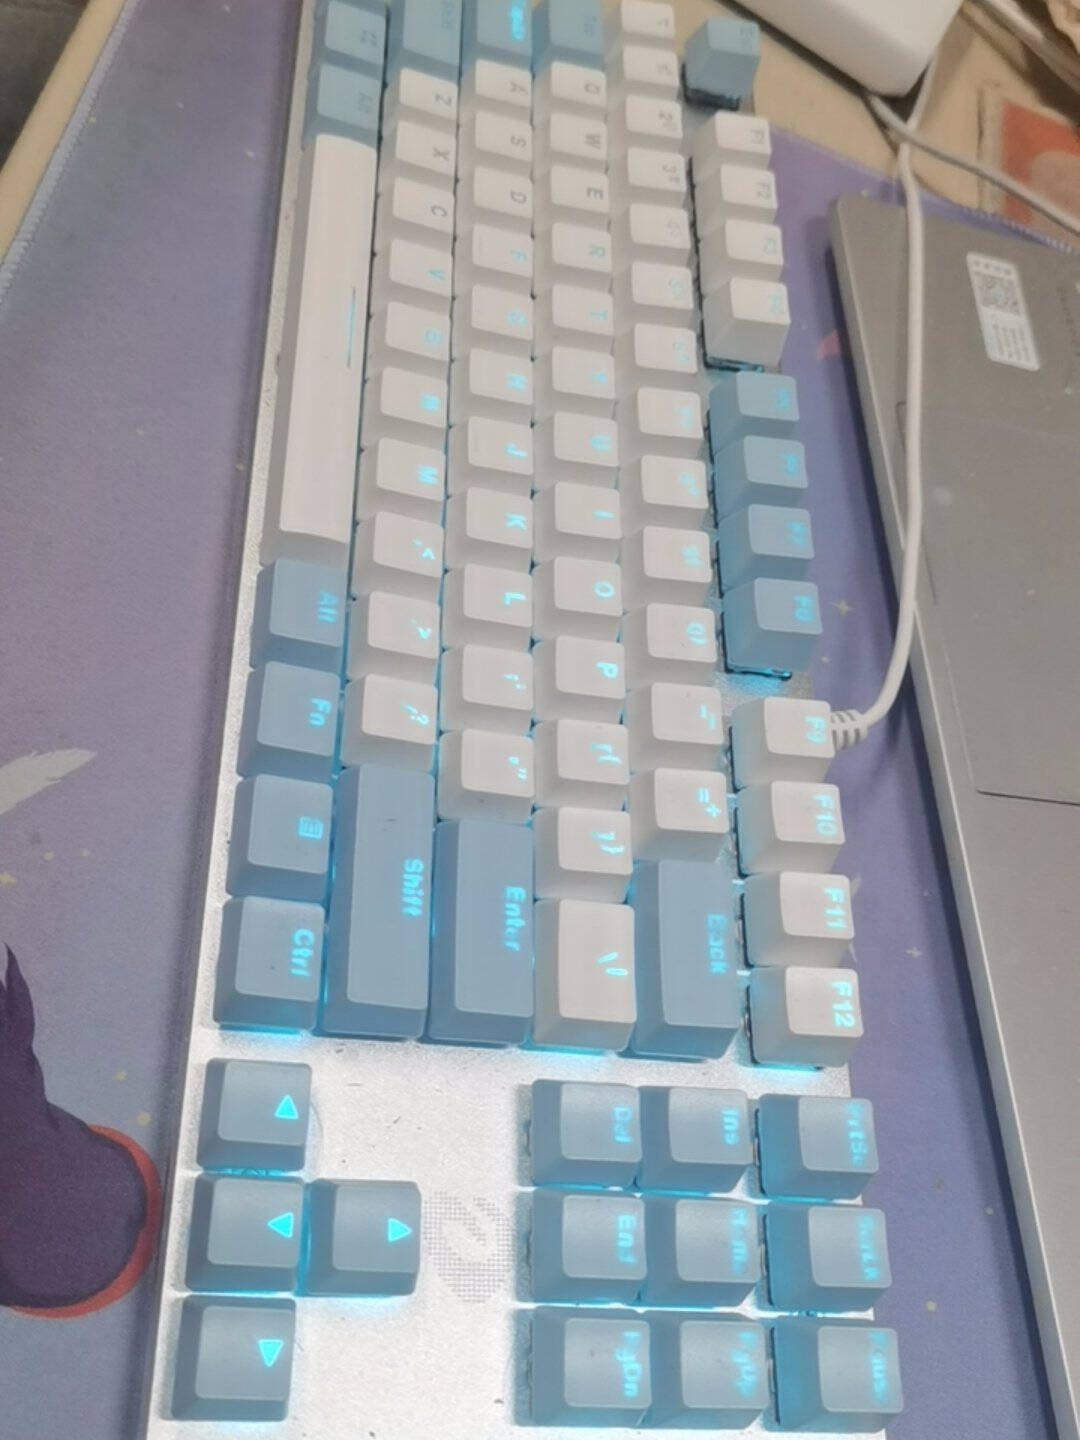 达尔优（dareu）机械师合金版机械键盘有线键盘游戏键盘108键EK815单光女生电脑键盘白色蓝色青轴